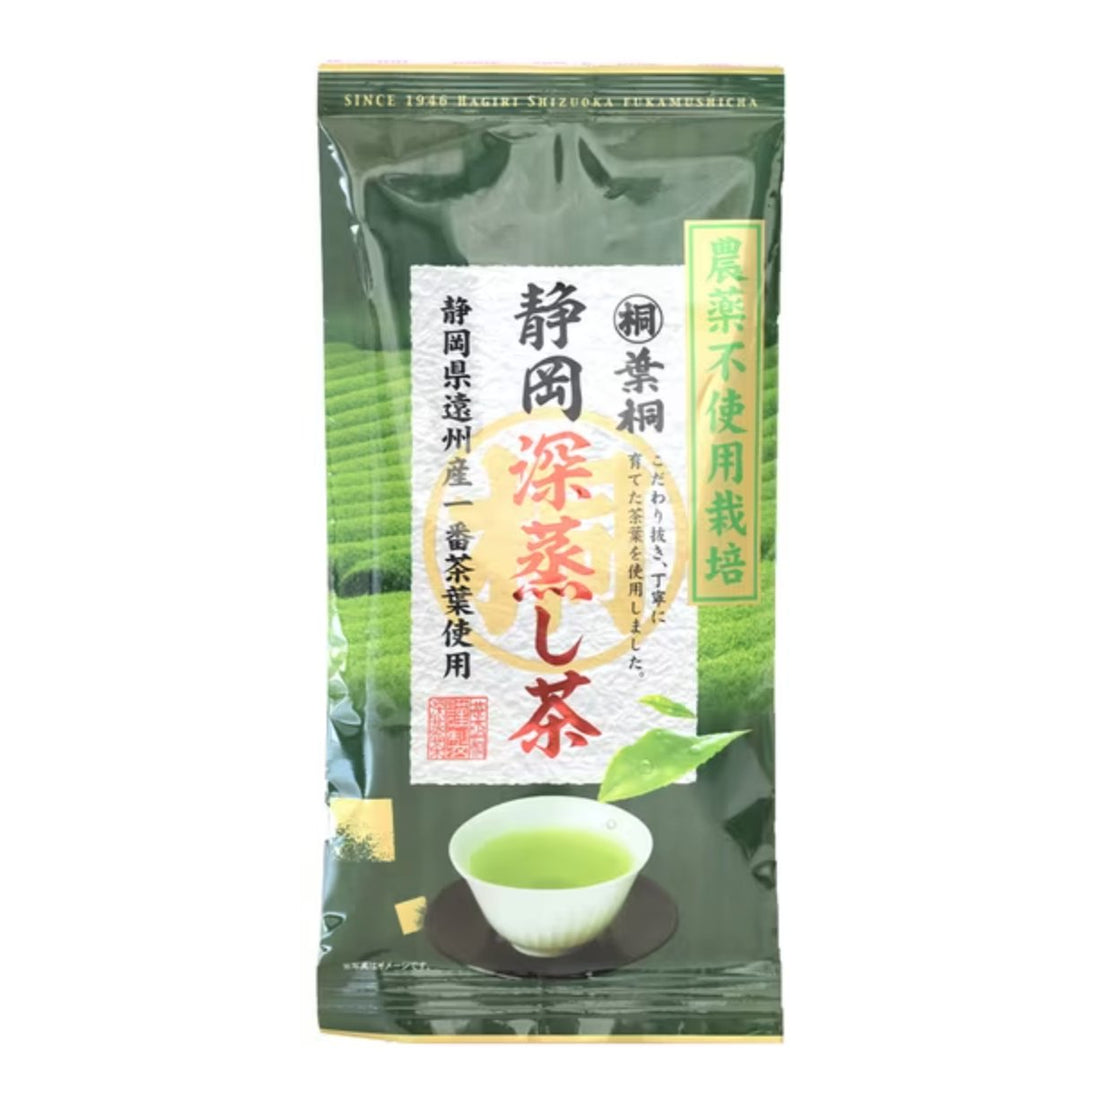 Hagiri Fukamushi Sencha from Shizuoka Pesticide-free cultivated tea 100g - NihonMura